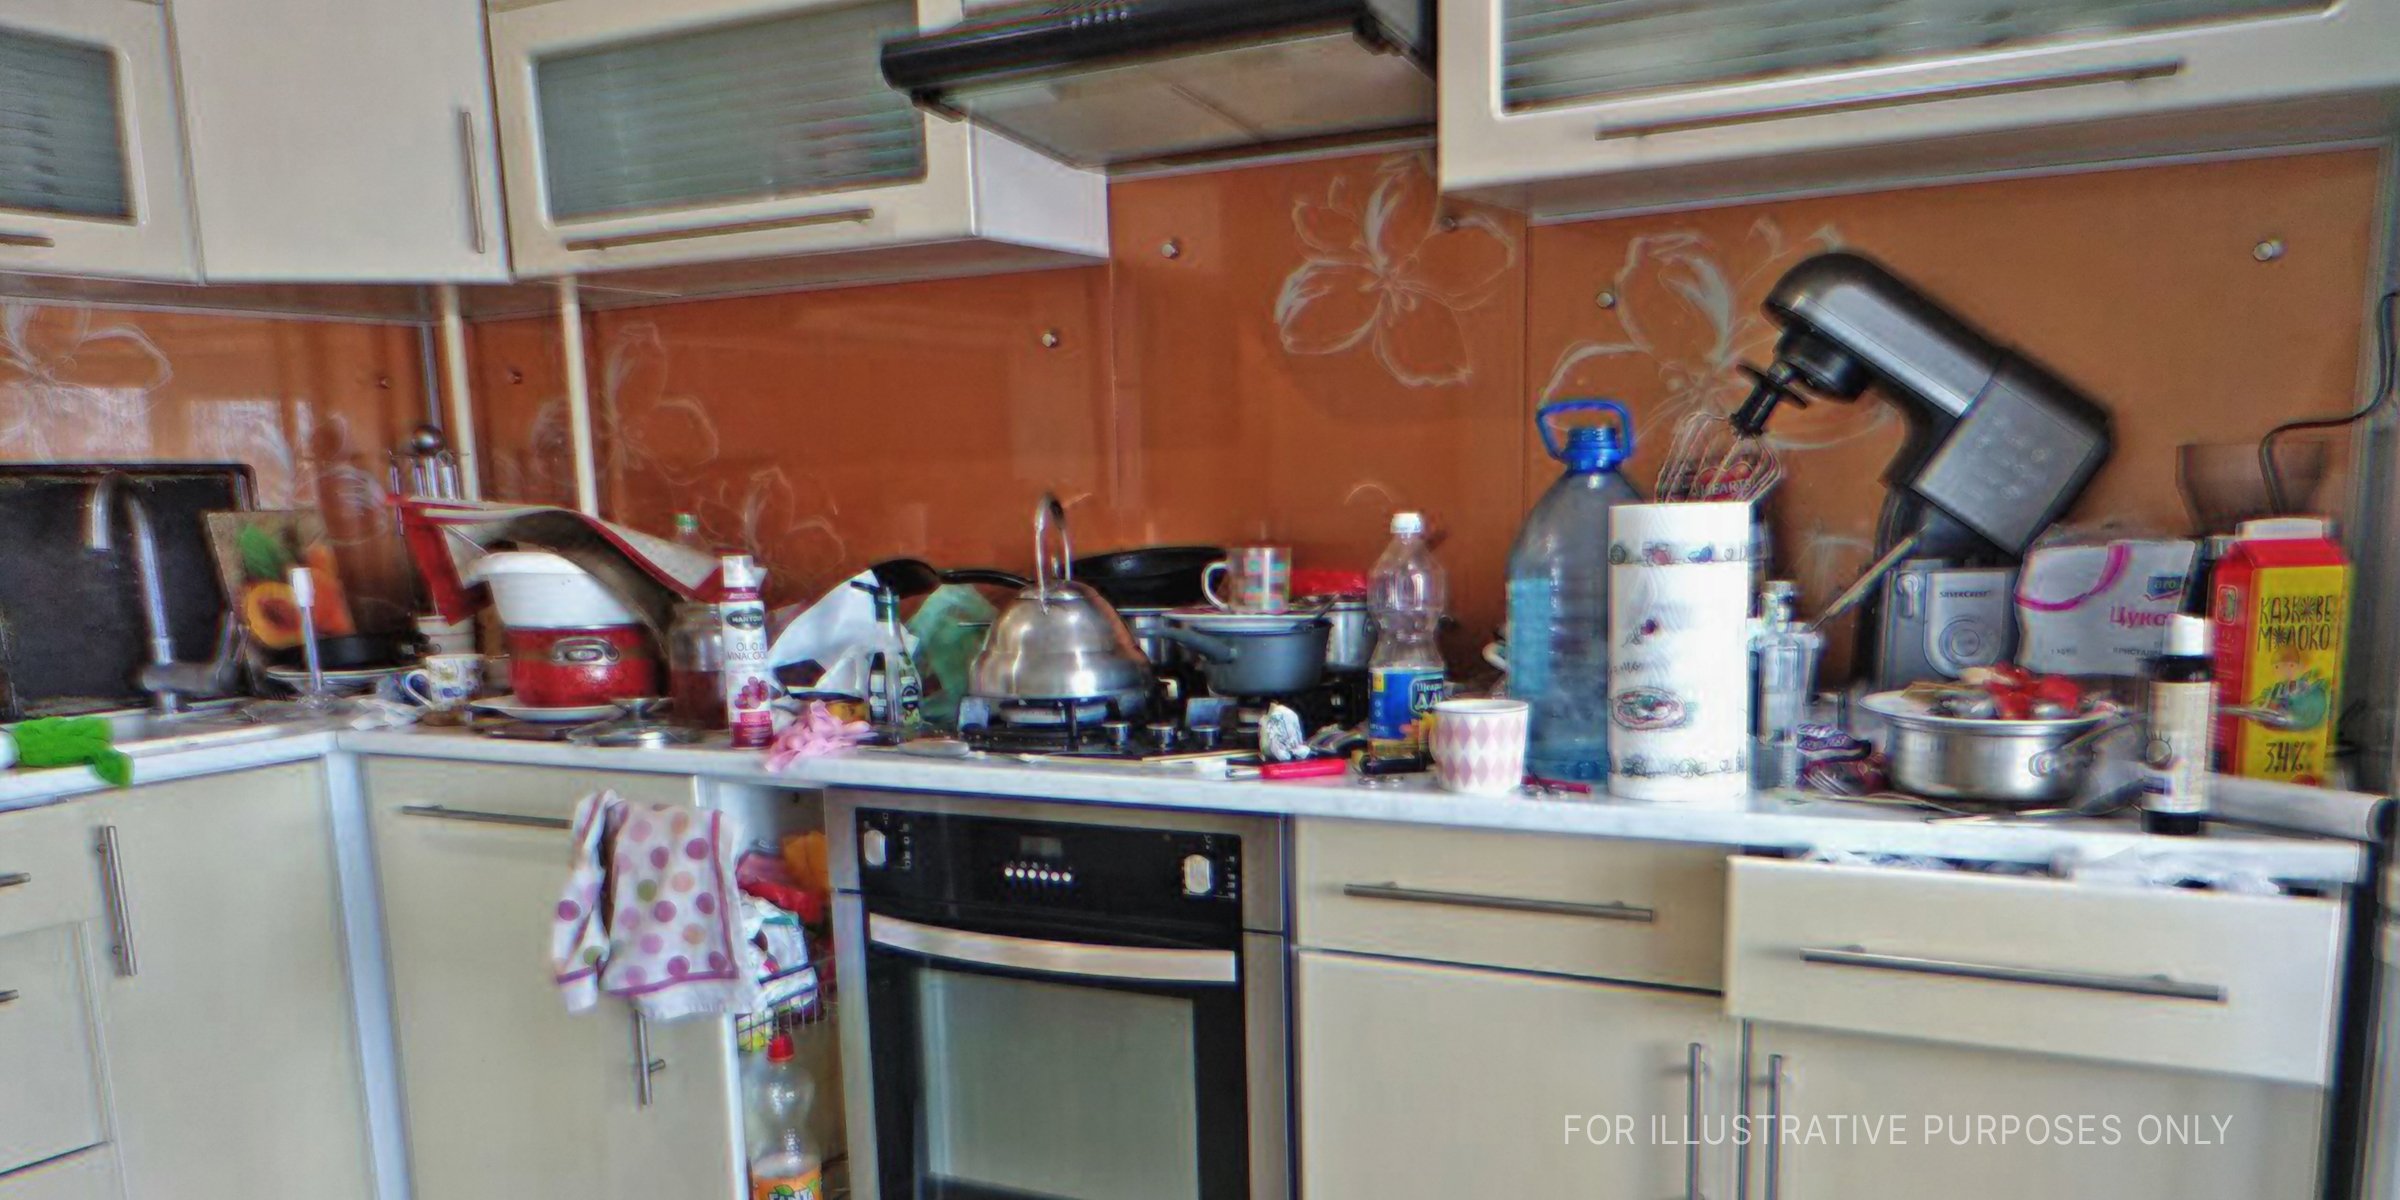 Messy kitchen. | Source: Shutterstock